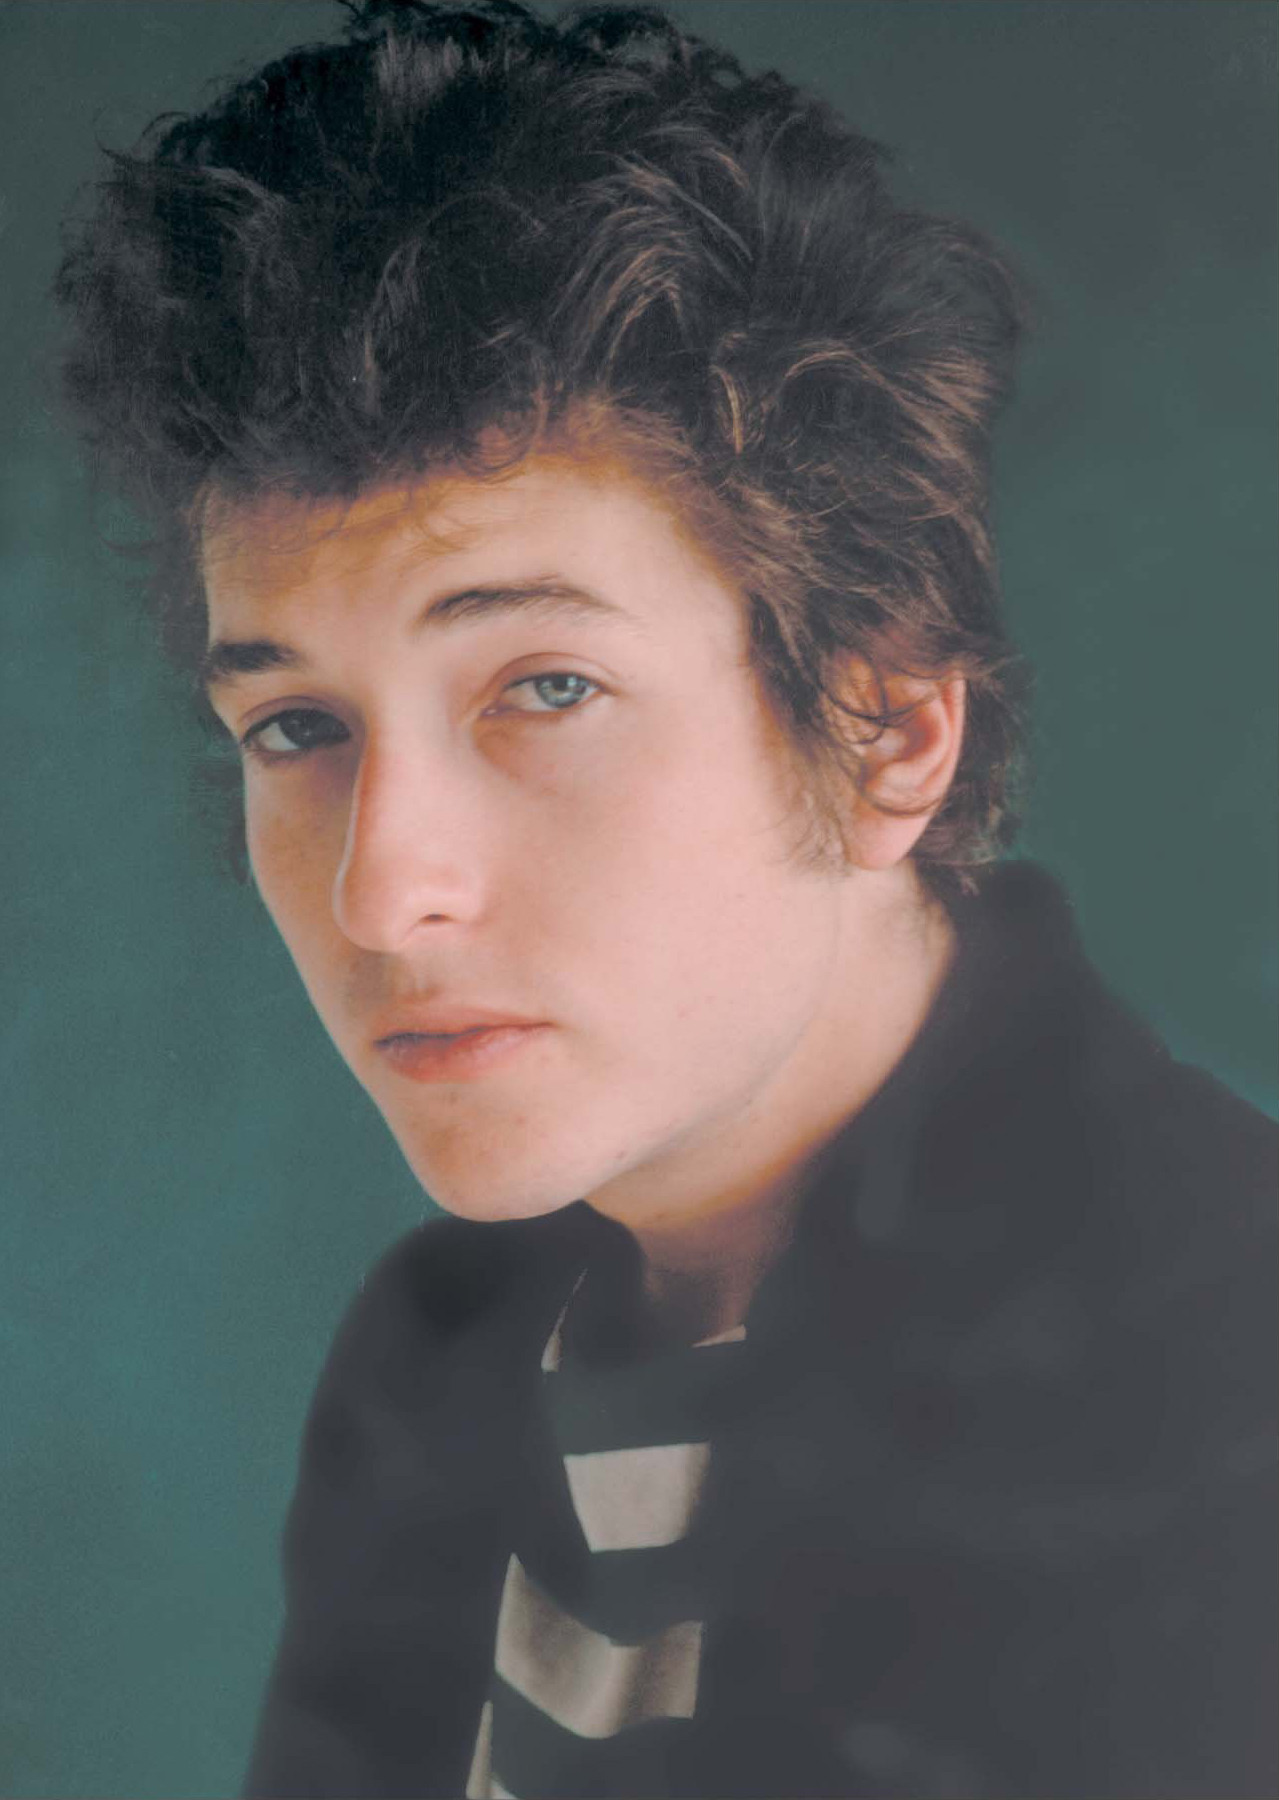 Боб Дилан (Bob Dylan)